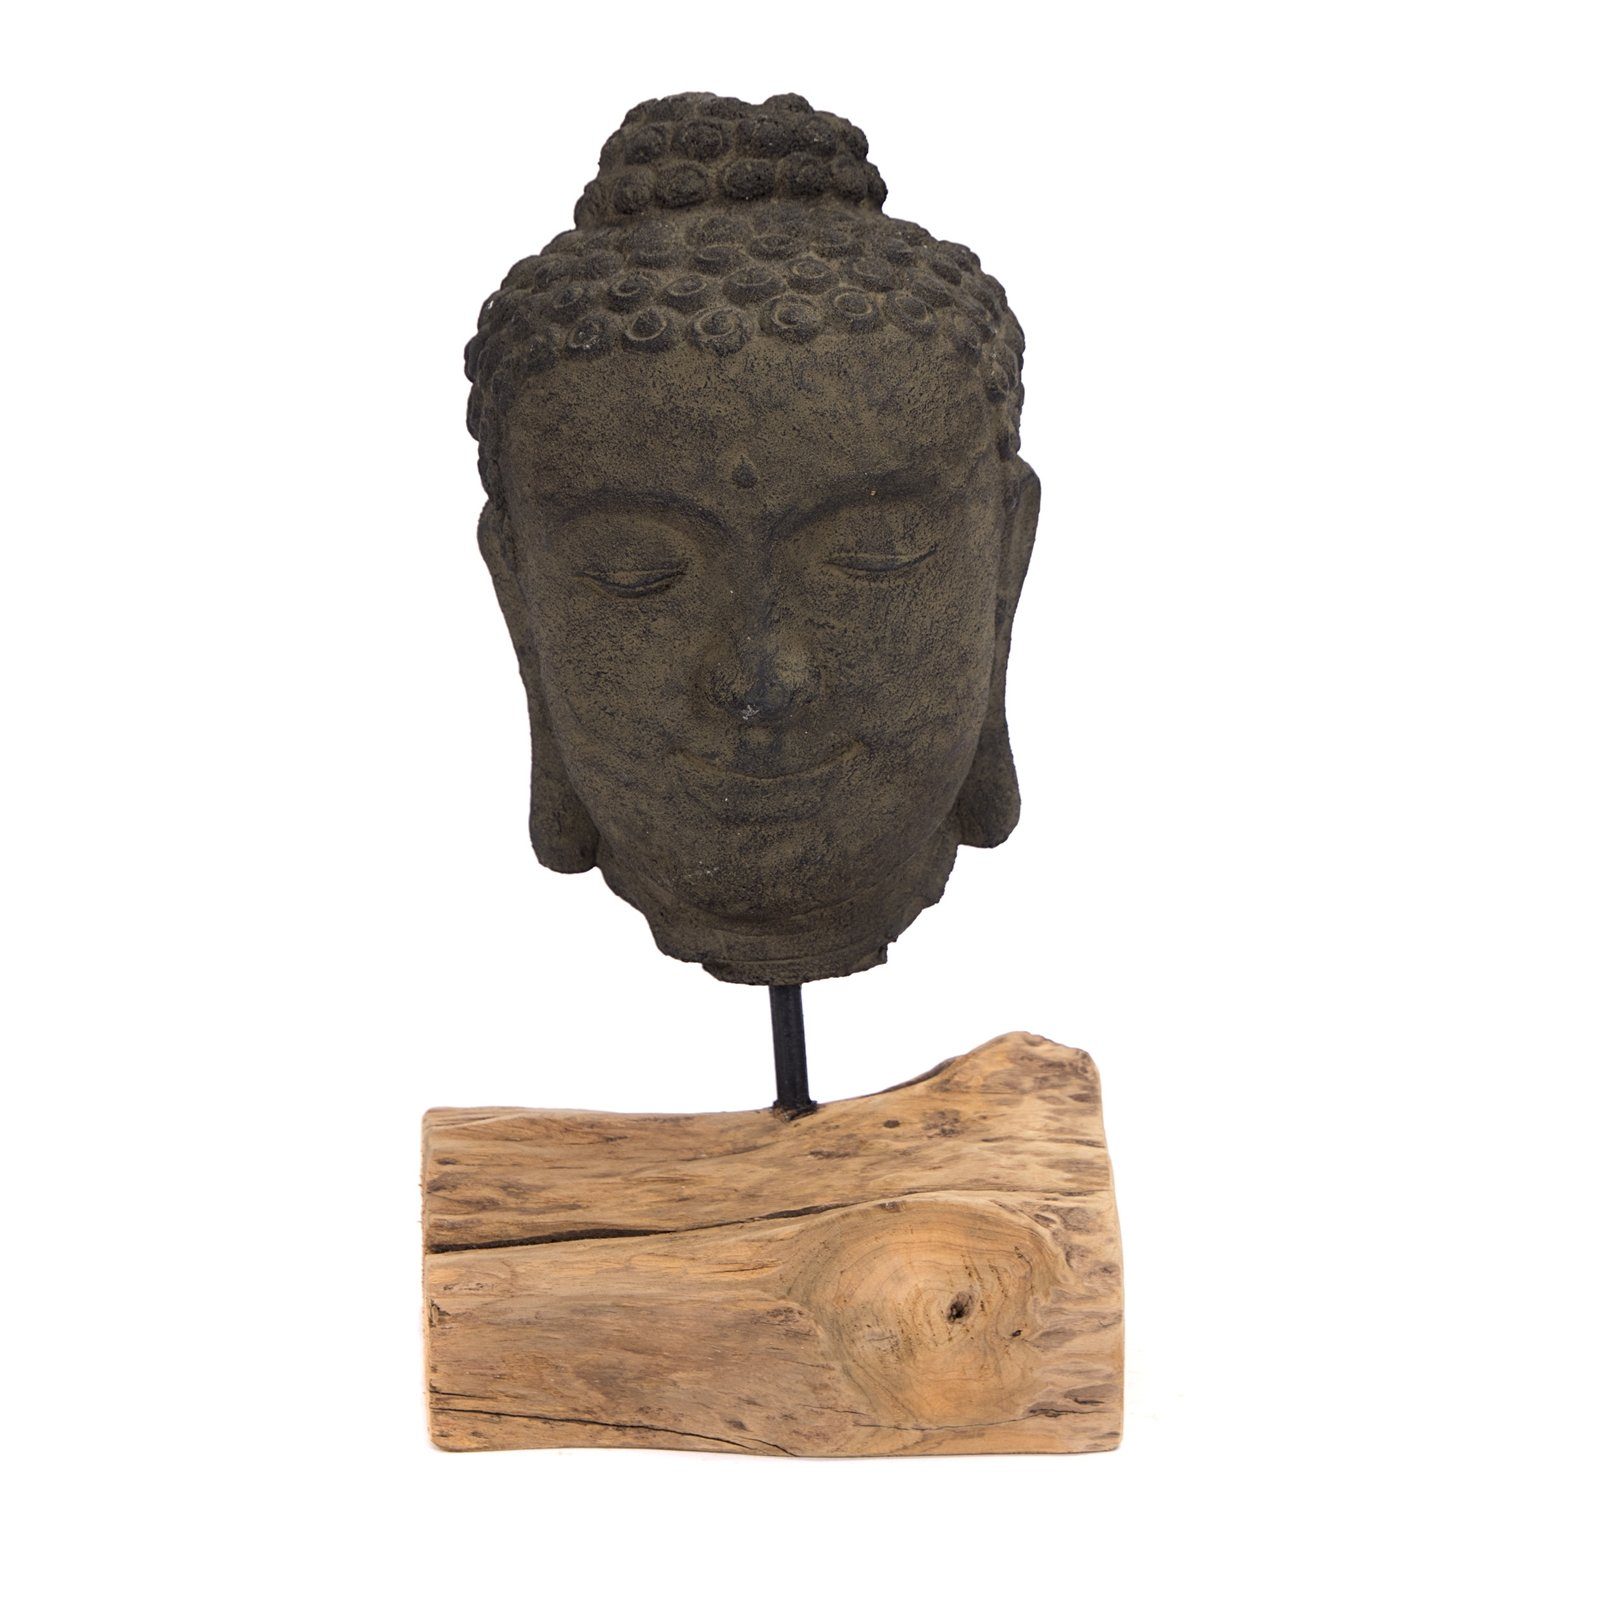 Deko SKULPTUR 45 cm, CREEDWOOD Buddha-Kopf, Objekt Skulptur Beton, Buddha "BUDDHA",